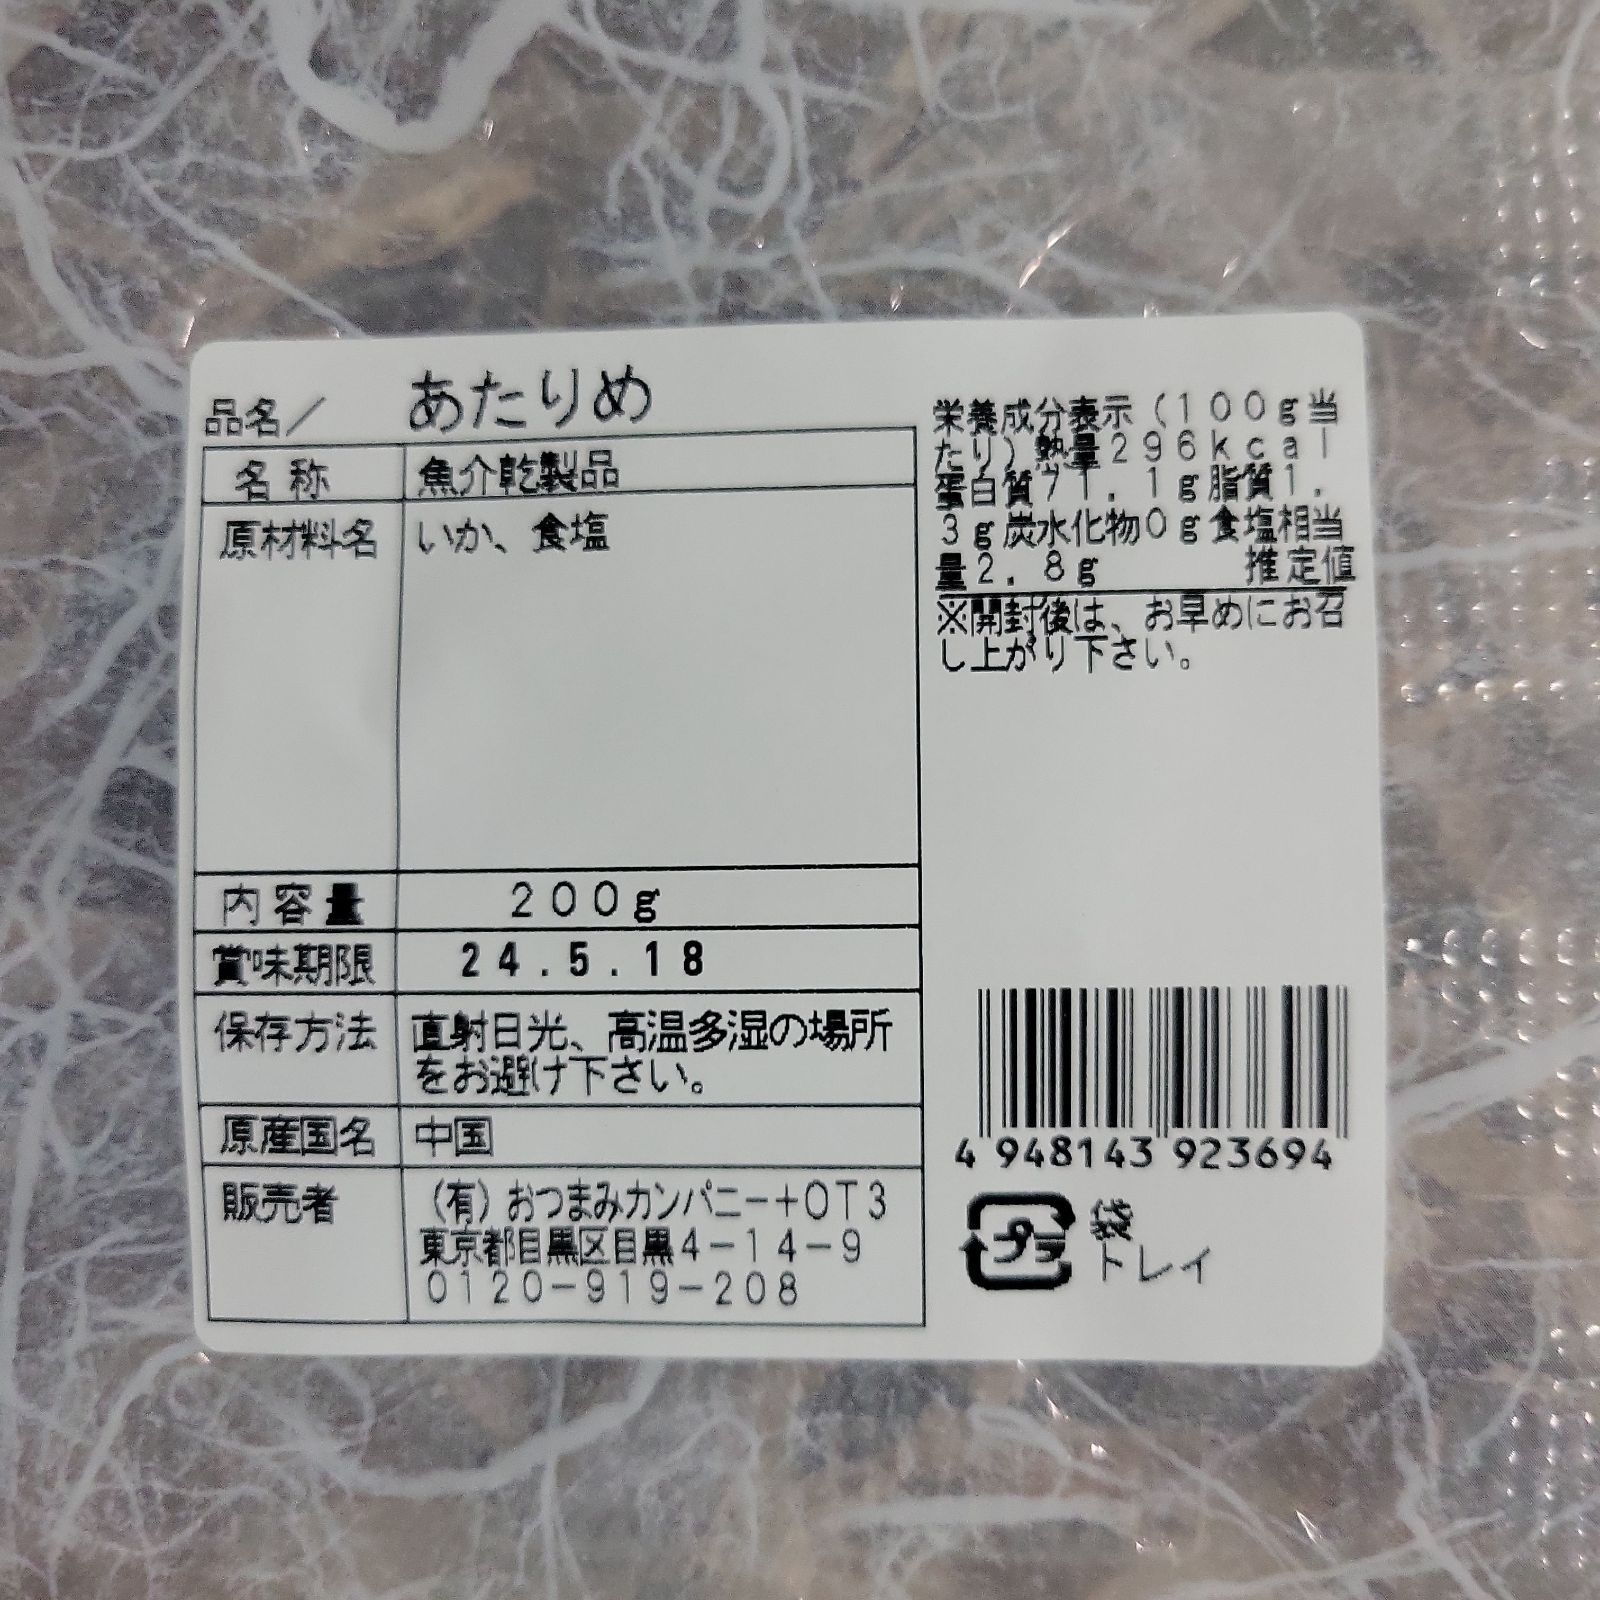 珍味お徳用200g珍味「あたりめ」お徳用200g ×12袋→1箱 - 魚介類(加工食品)